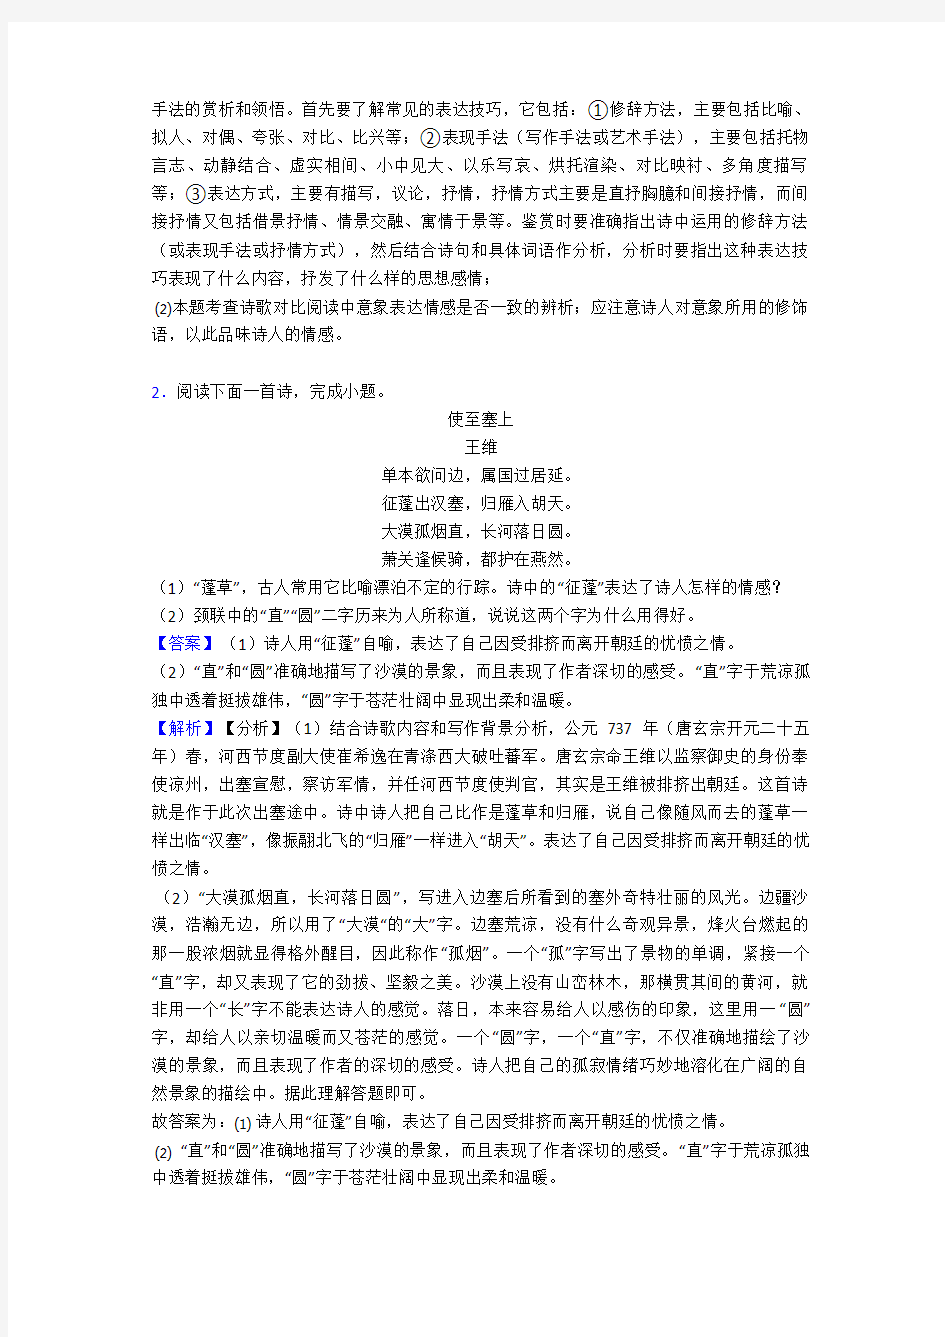 初中语文诗歌鉴赏+文言文阅读常见题型及答题技巧及练习题(含答案) (30)